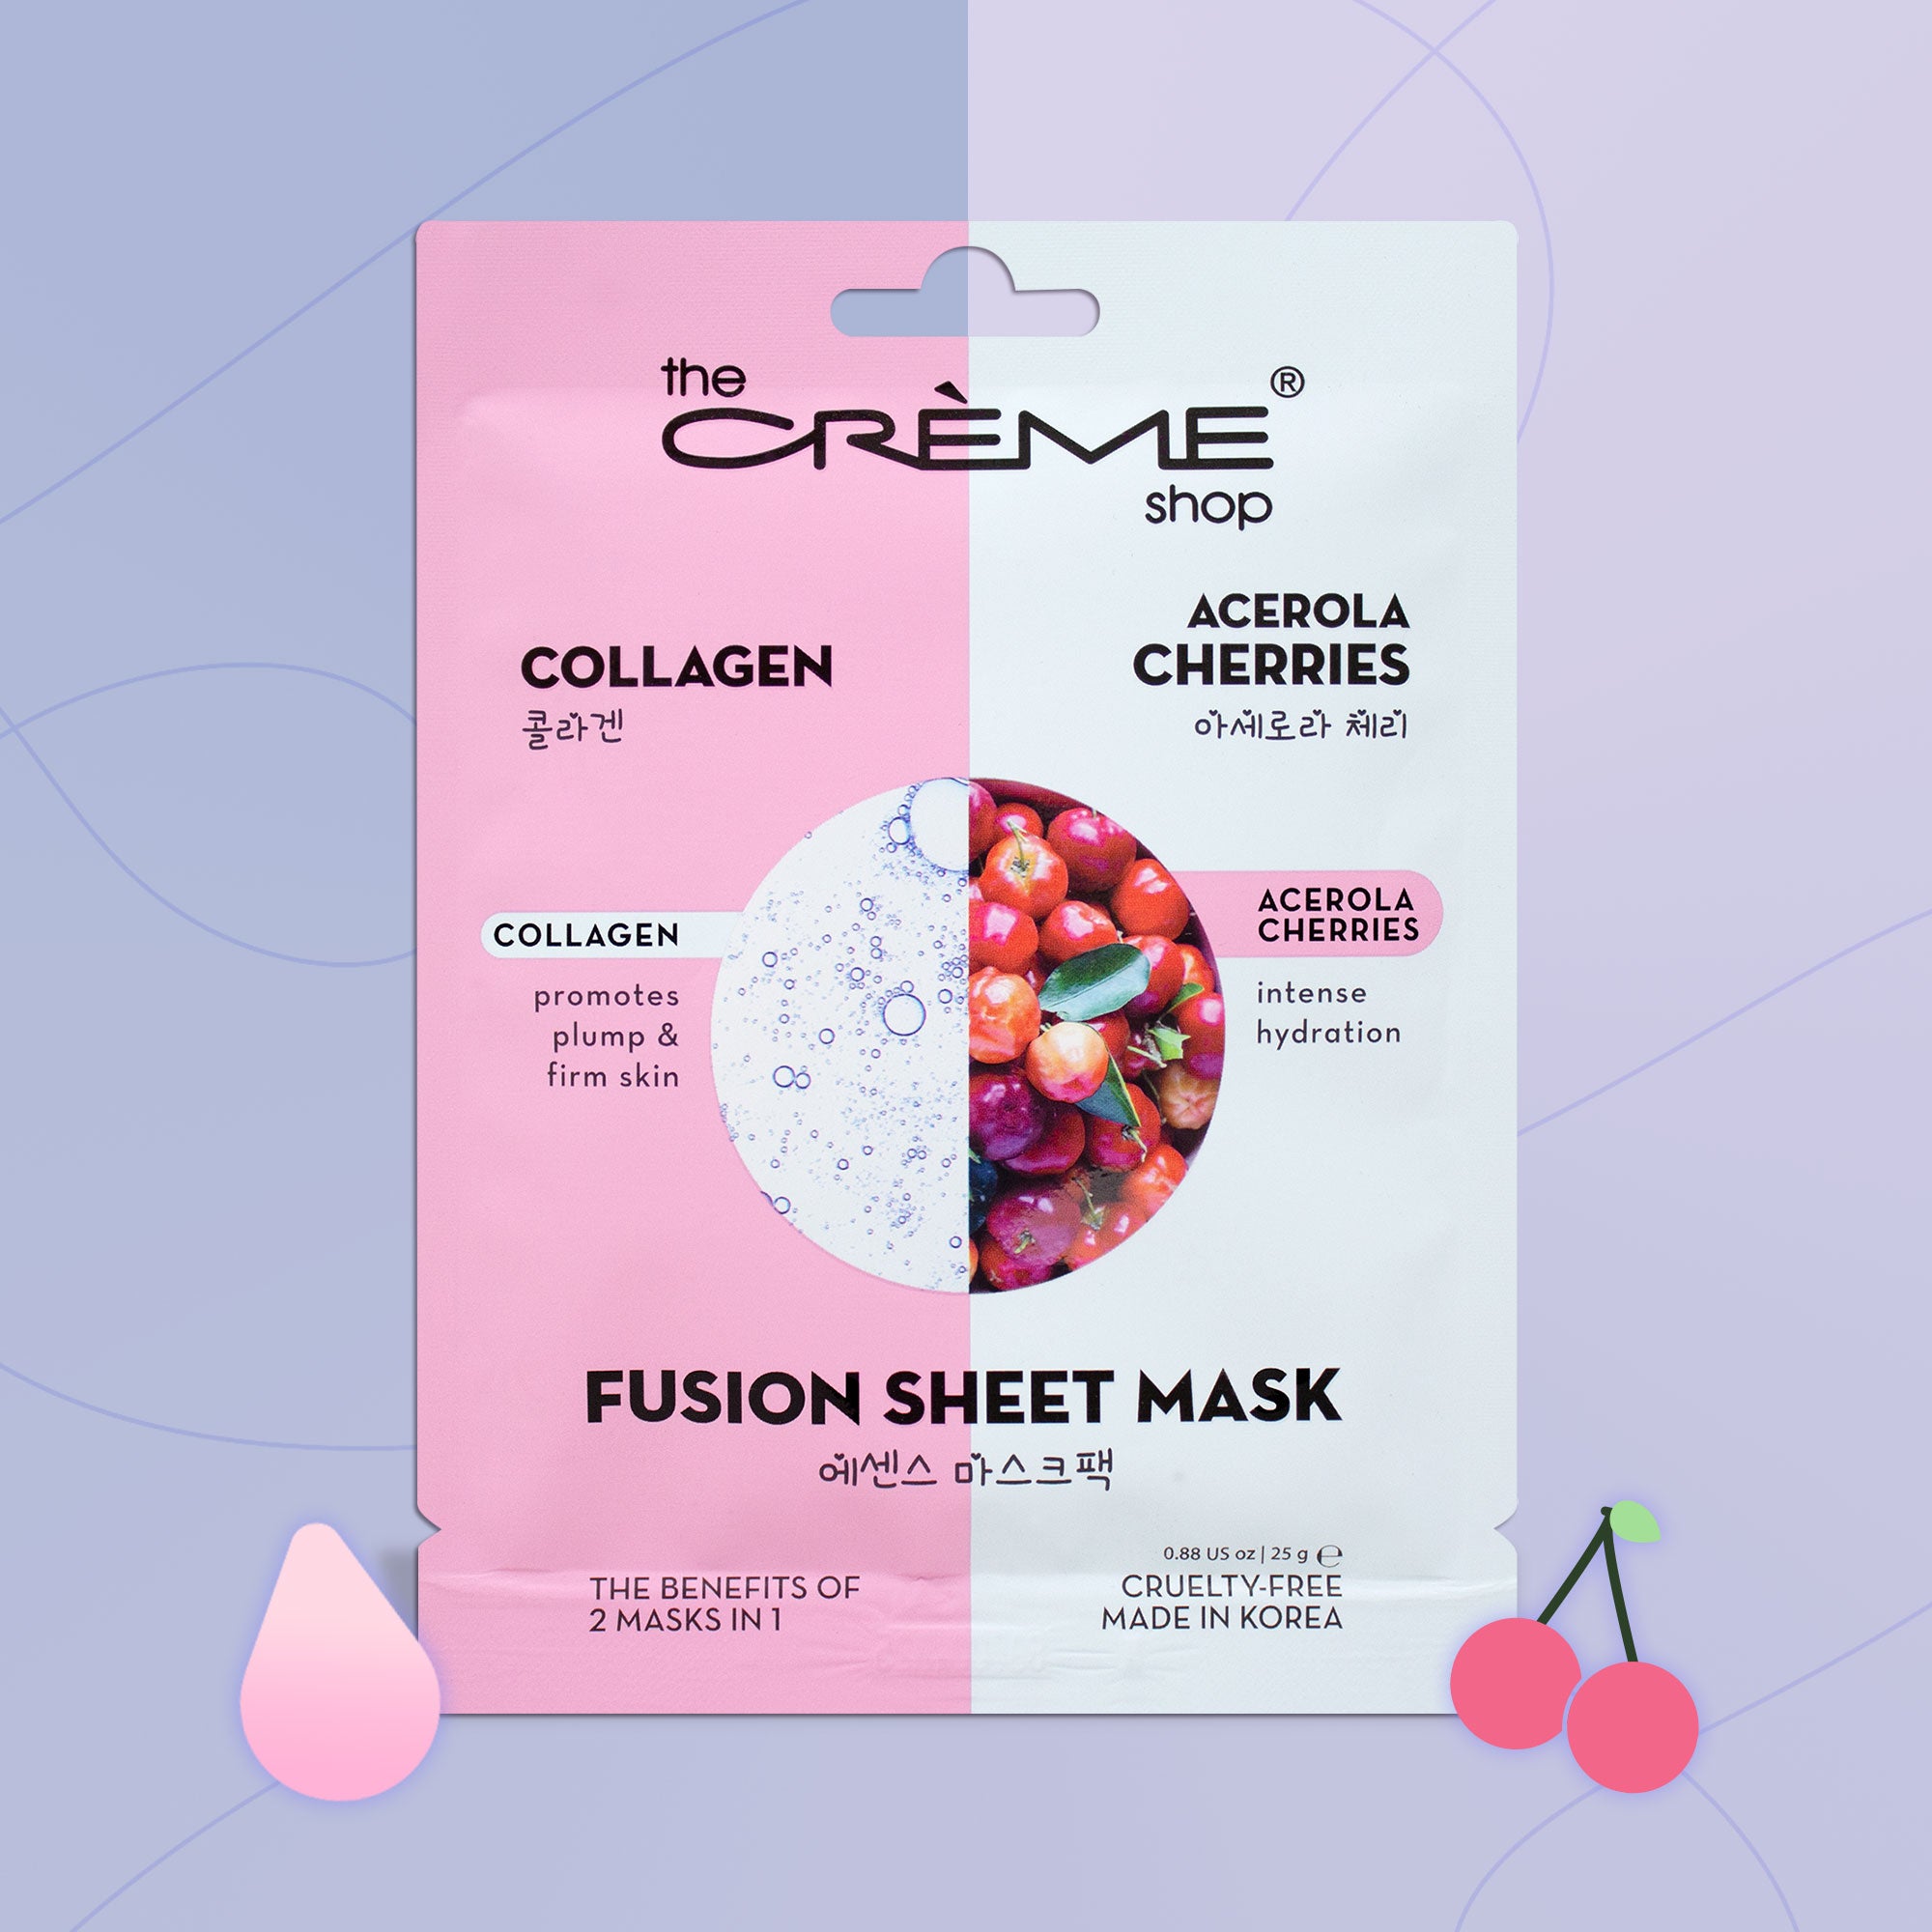 Collagen & Acerola Cherry Fusion Sheet Mask Fusion Sheet Masks The Crème Shop 